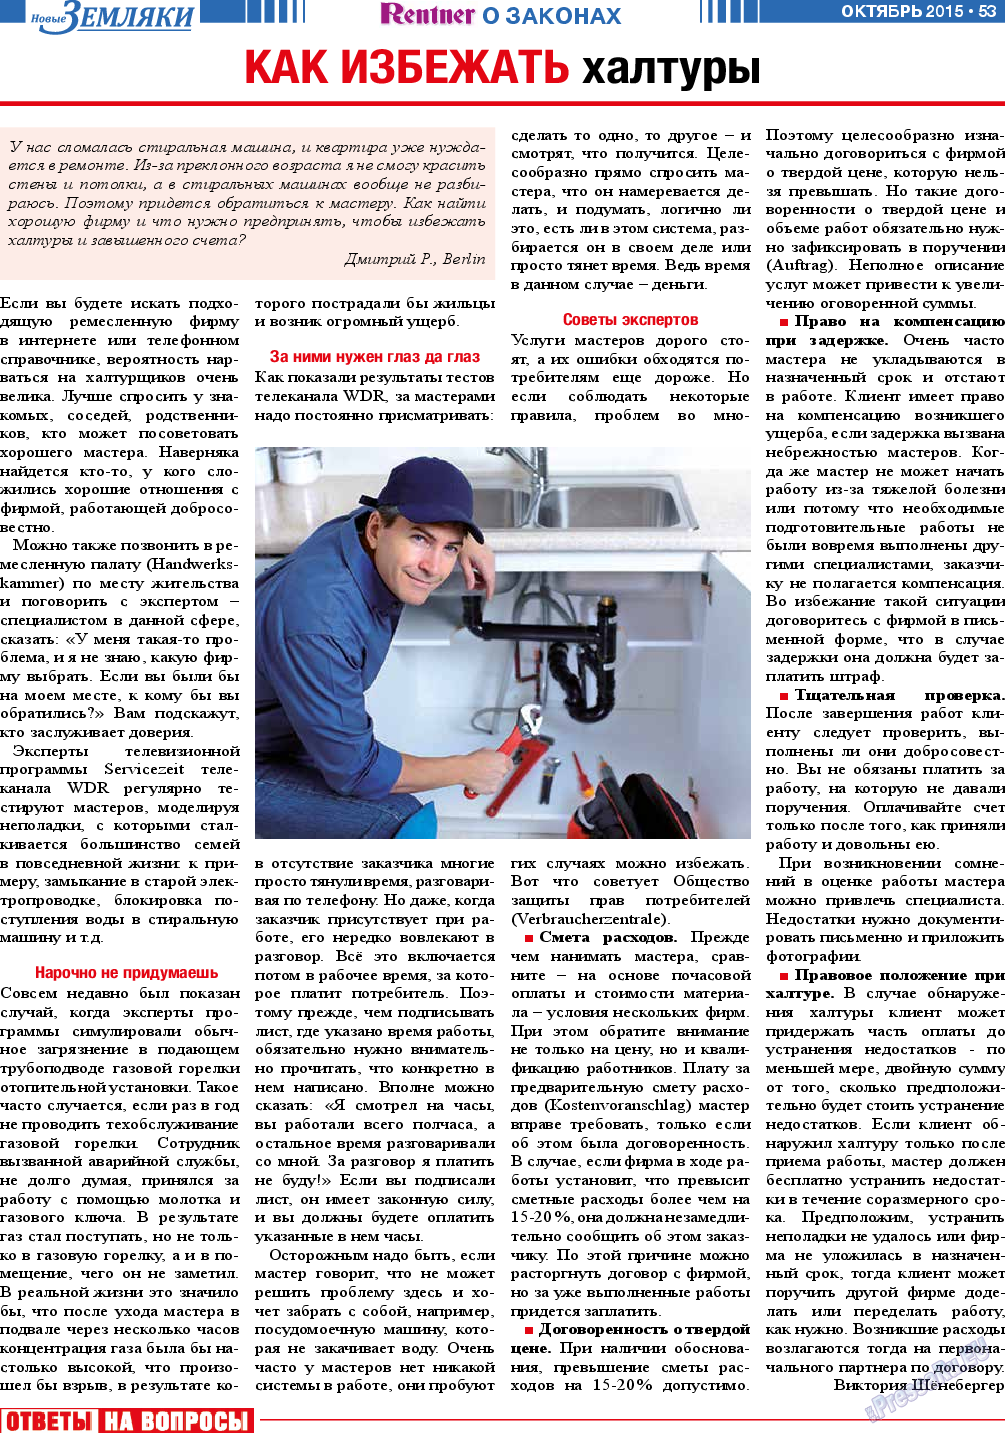 Новые Земляки, газета. 2015 №10 стр.53